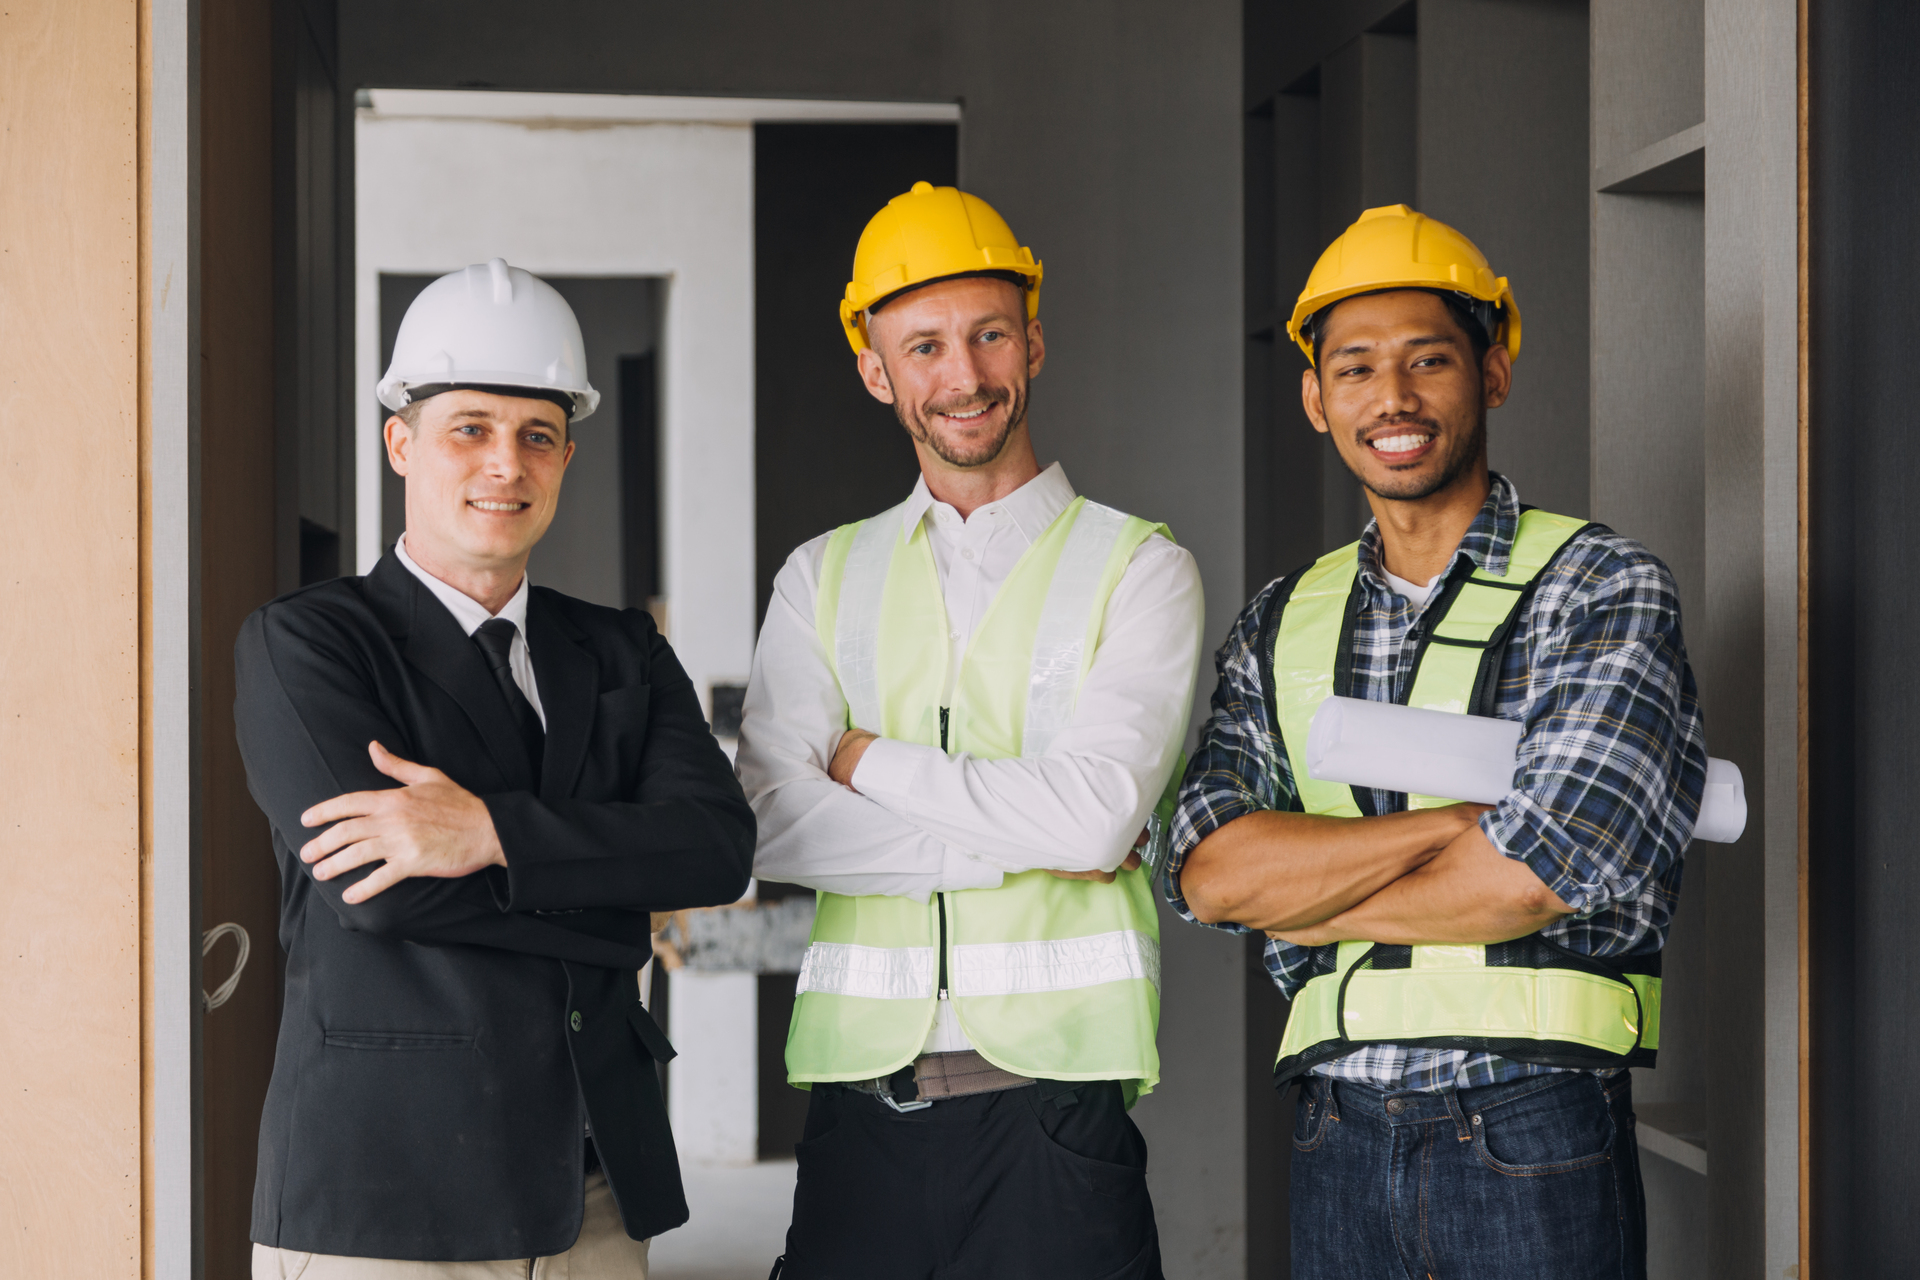 Na naszym obrazku zobaczysz trzech mężczyzn, którzy są współwłaścicielami firmy budowlanej. Właściciele firm budowlanych muszą posiadać nie tylko wiedzę i doświadczenie z zakresu budownictwa, ale także umiejętności zarządzania, negocjacji i pracy zespołowej. Właściciele firmy budowlanej muszą współpracować ze sobą, aby zarządzać projektami budowlanymi, pozyskiwać klientów i dbać o rozwój firmy. Przekonaj się, jakie cechy i umiejętności posiadają właściciele firmy budowlanej i jakie wyzwania czekają na nich w branży budowlanej.